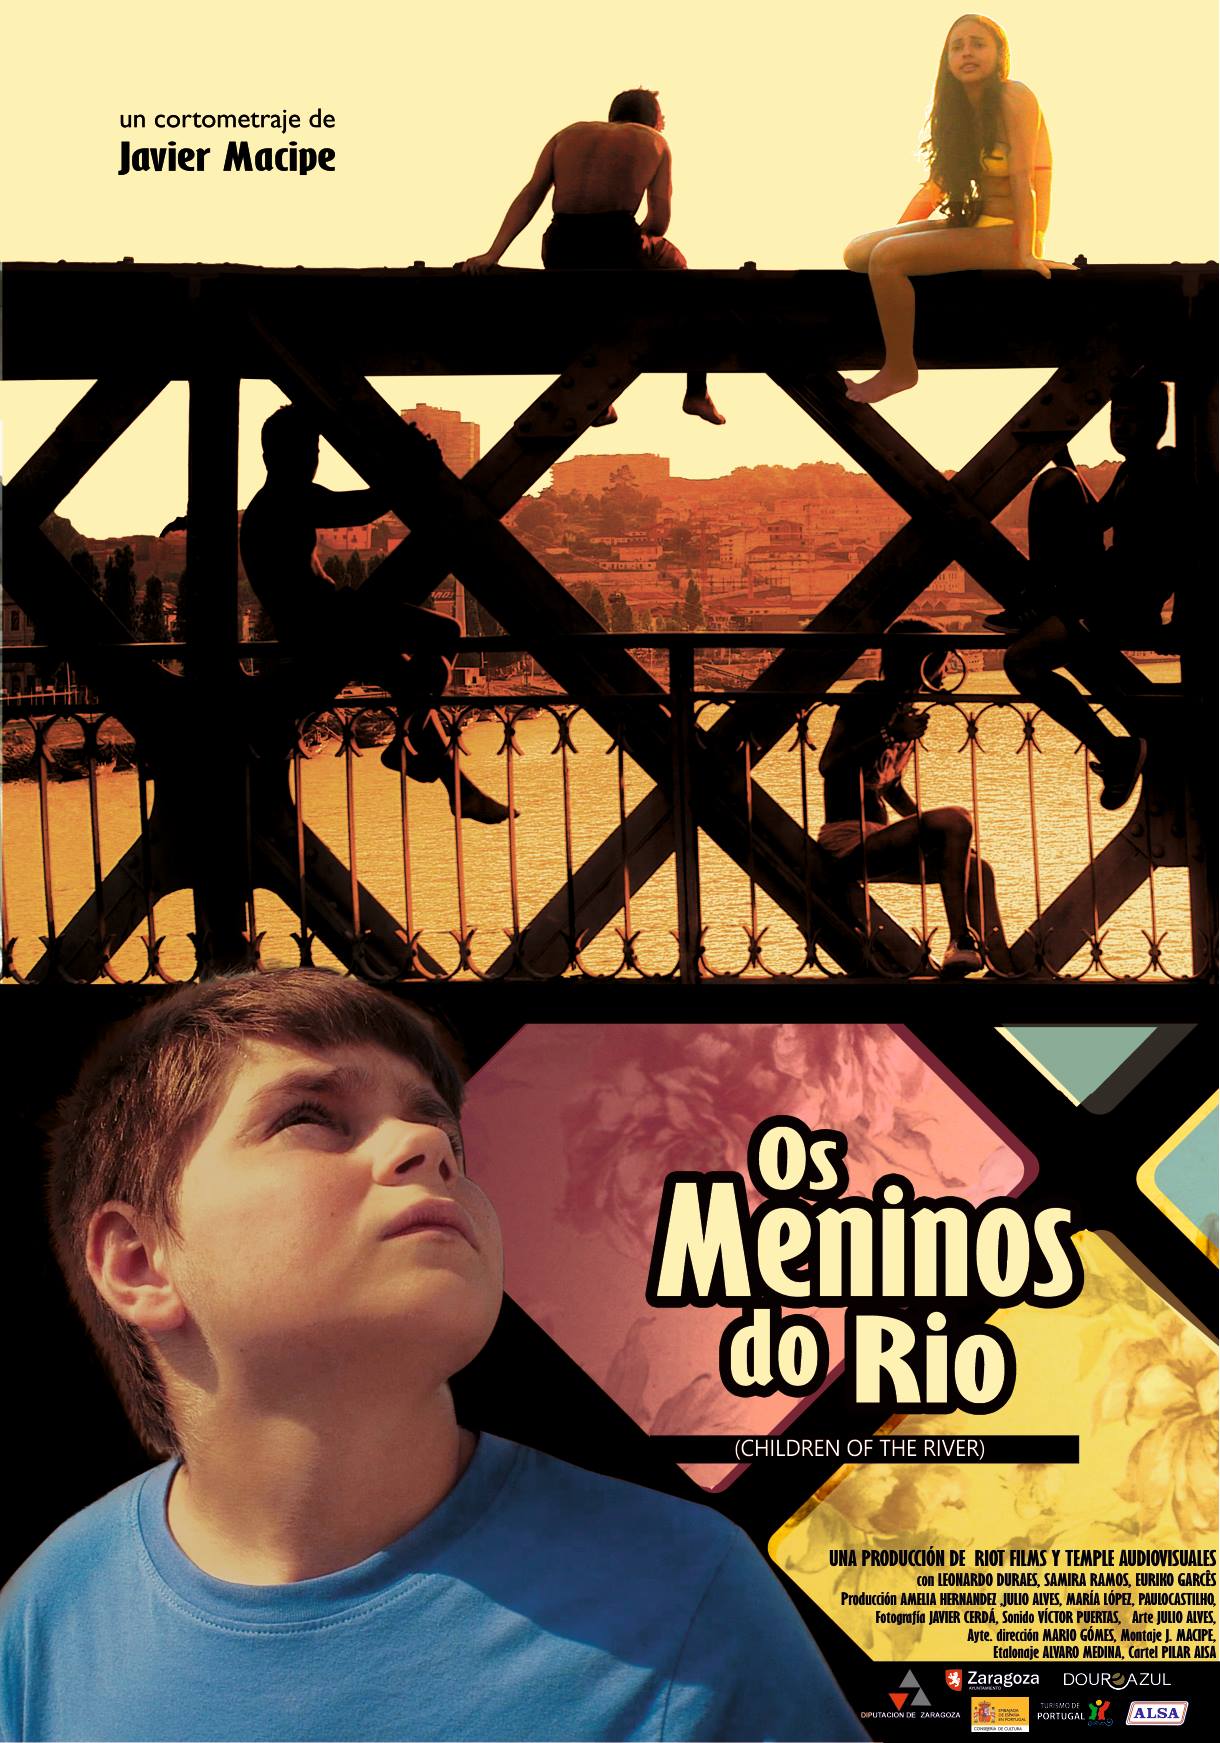 Cartel Os Meninos do Rio. Dirección Javier Macipe (2013) Coproducción hispano-portuguesa.